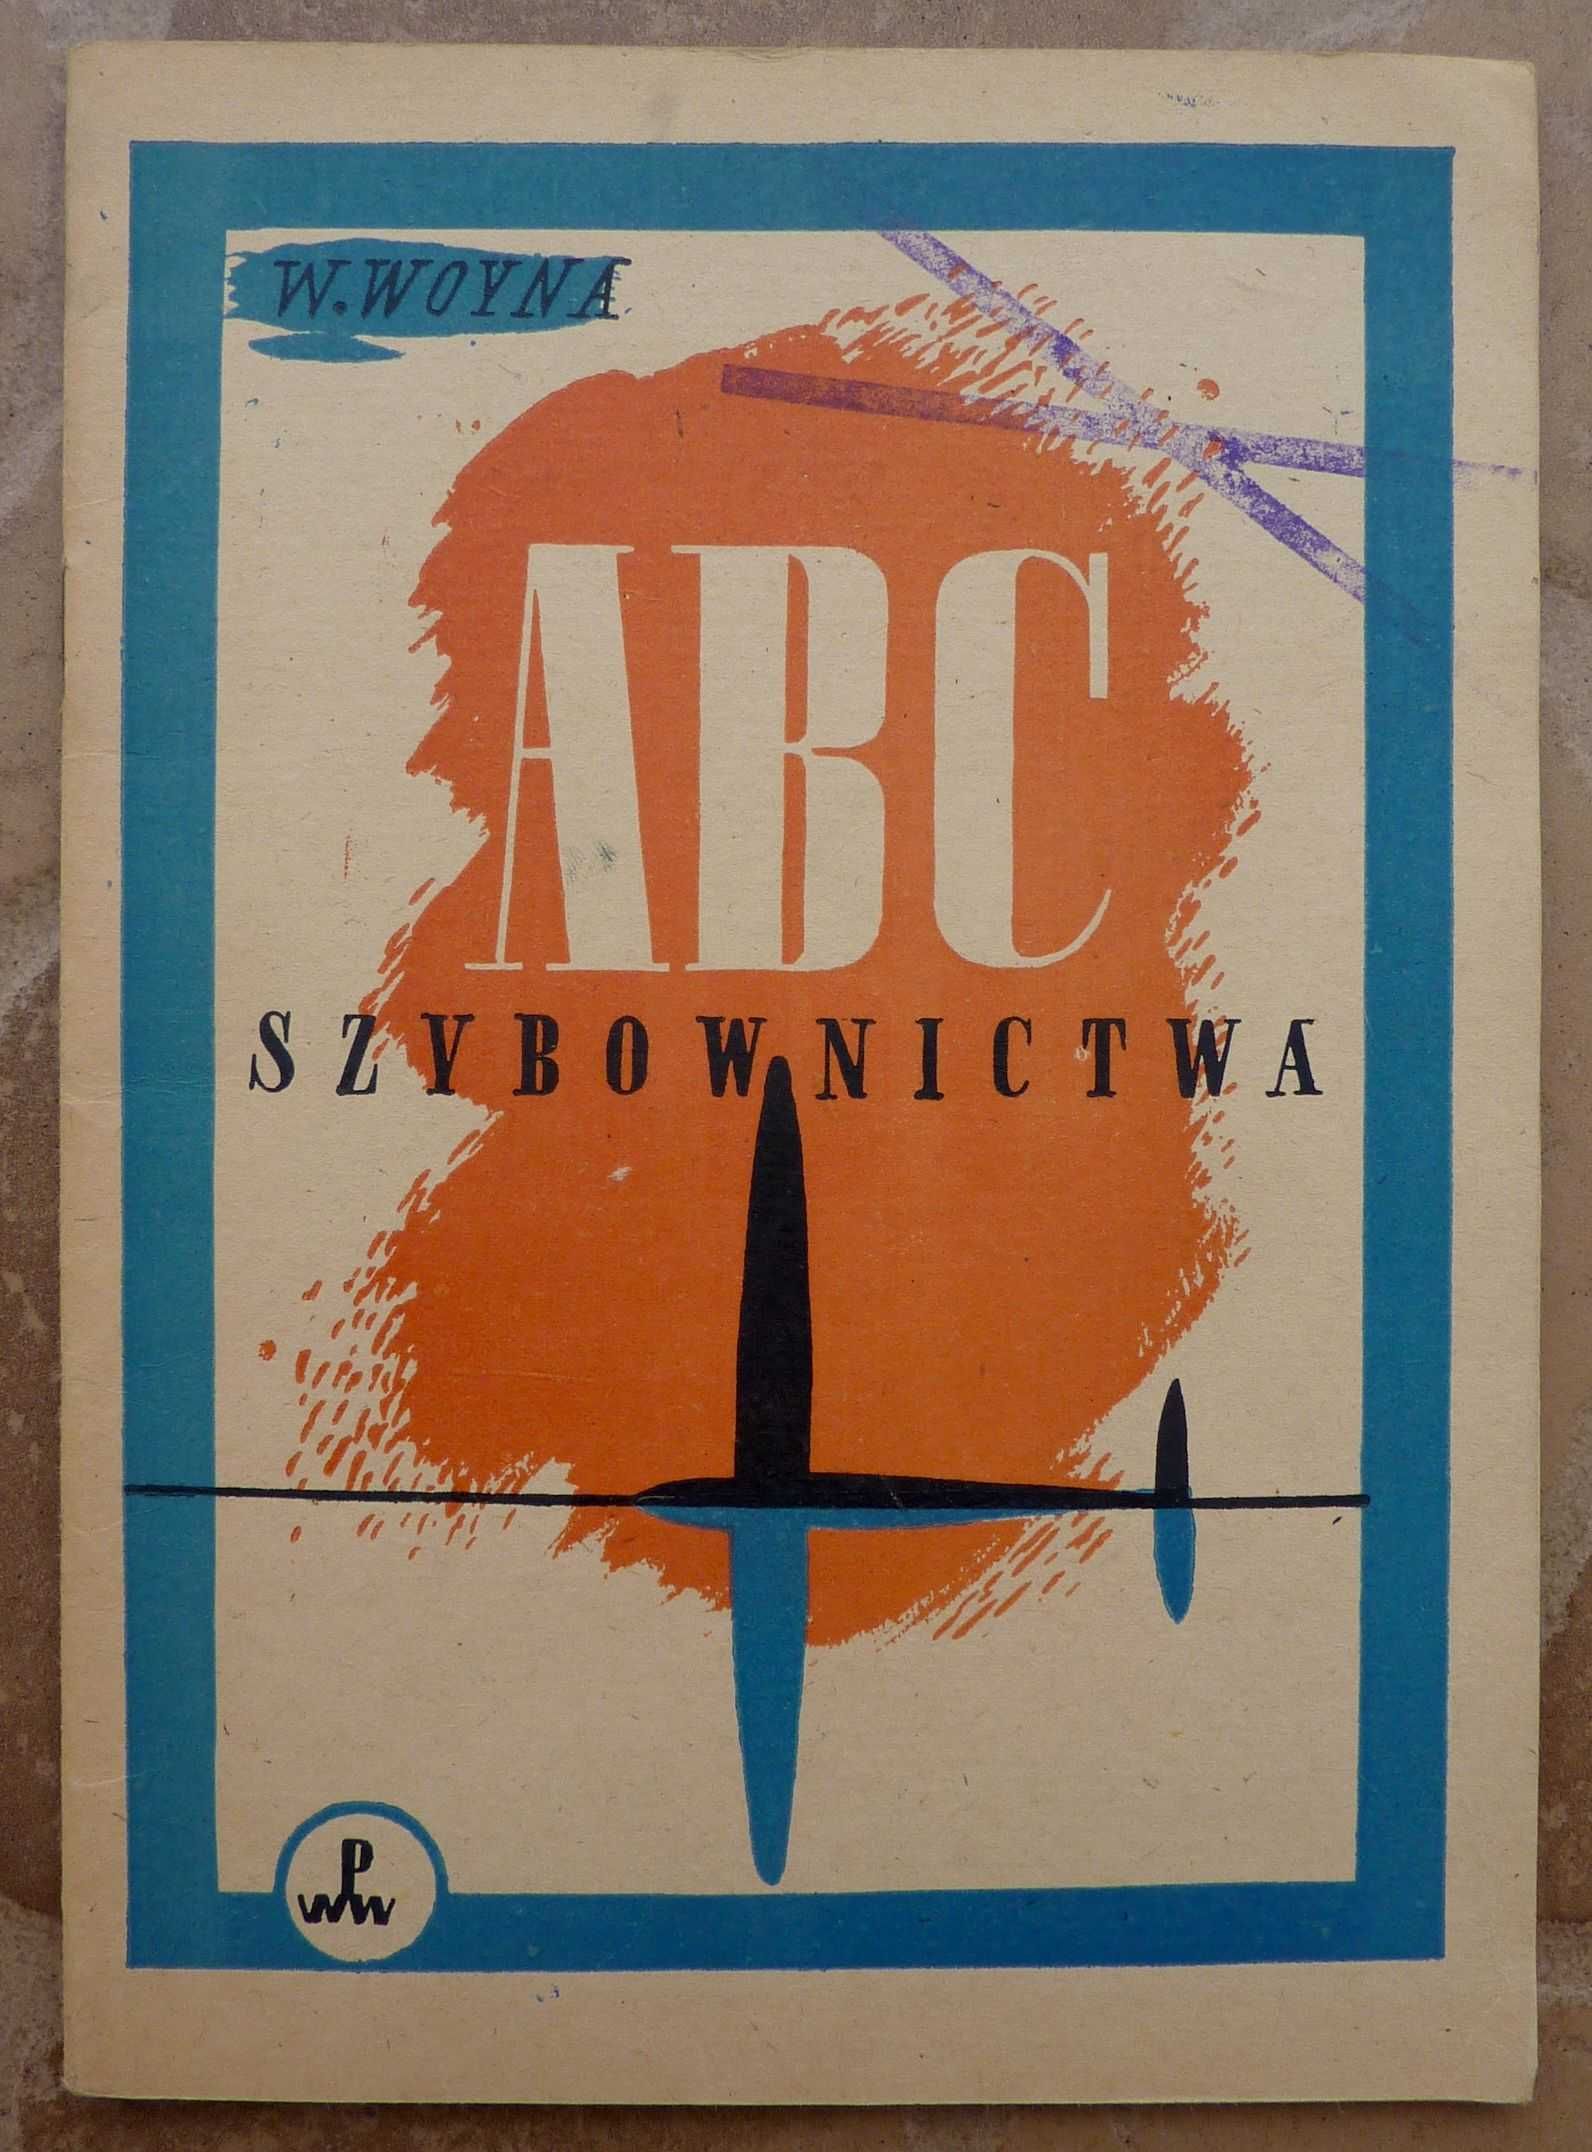 ABC szybownictwa - Wojciech Woyna - 1949r.